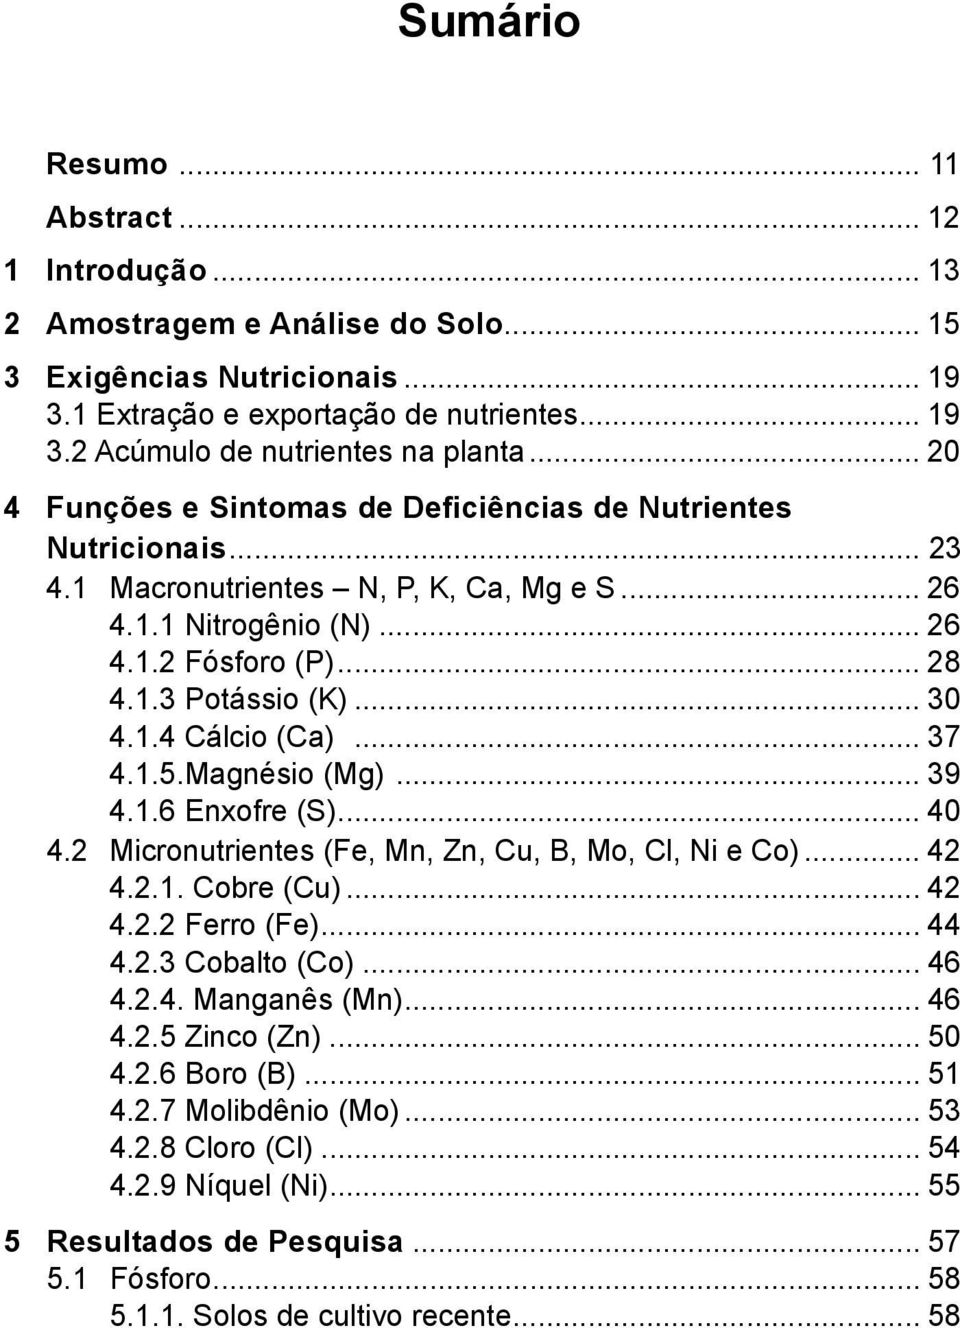 1.4 Cálcio (Ca)... 37 4.1.5.Magnésio (Mg)... 39 4.1.6 Enxofre (S)... 40 4.2 Micronutrientes (Fe, Mn, Zn, Cu, B, Mo, Cl, Ni e Co)... 42 4.2.1. Cobre (Cu)... 42 4.2.2 Ferro (Fe)... 44 4.2.3 Cobalto (Co).